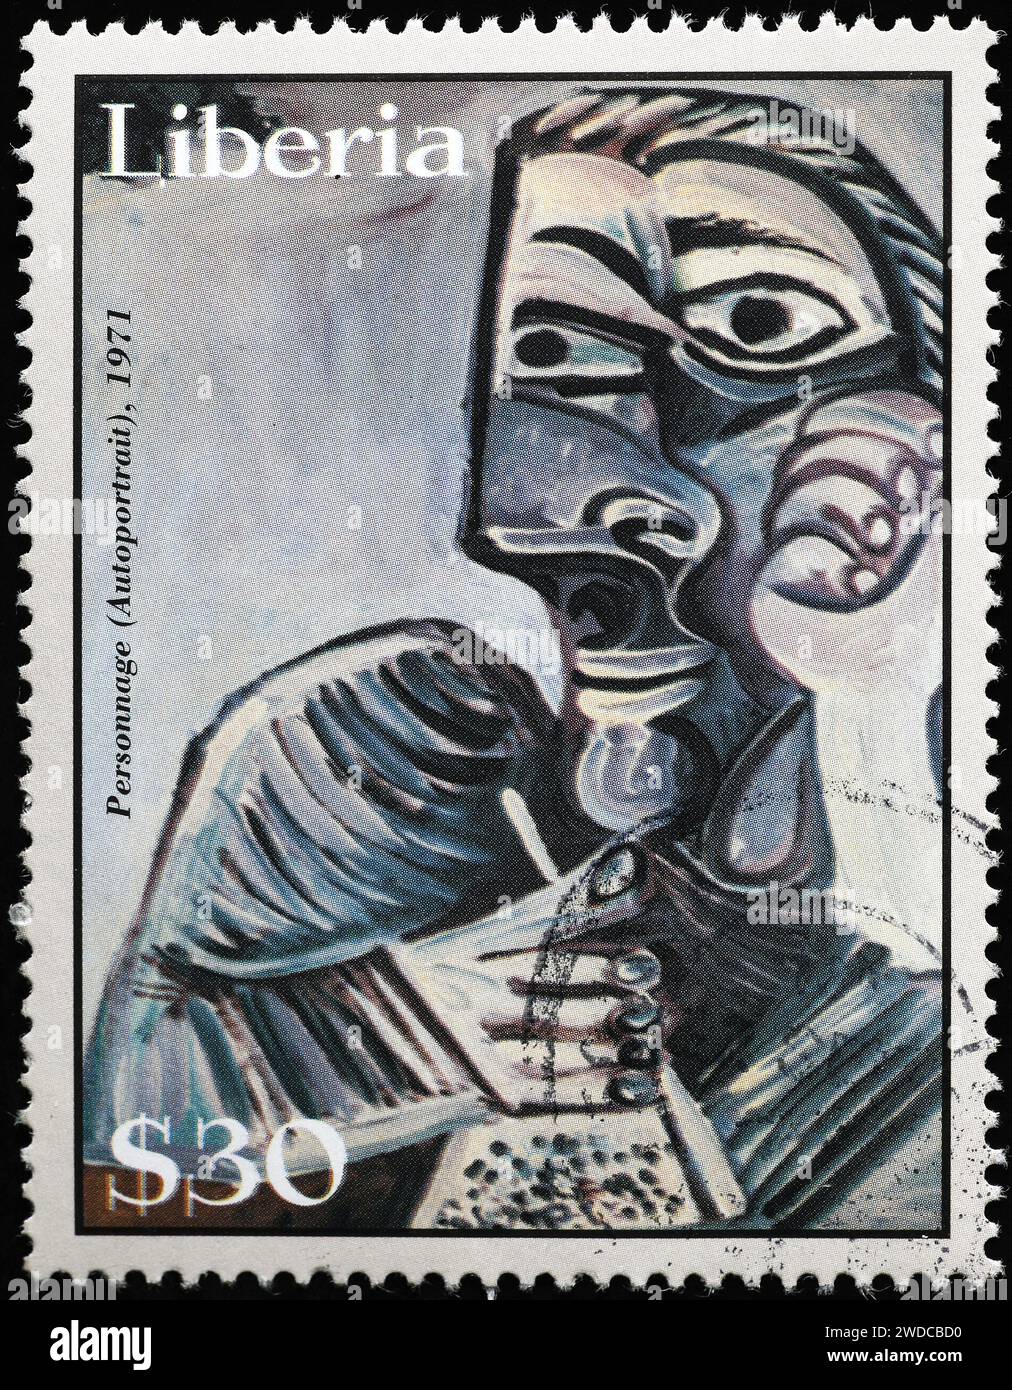 "Personnage" di Pablo Picasso su francobollo Foto Stock